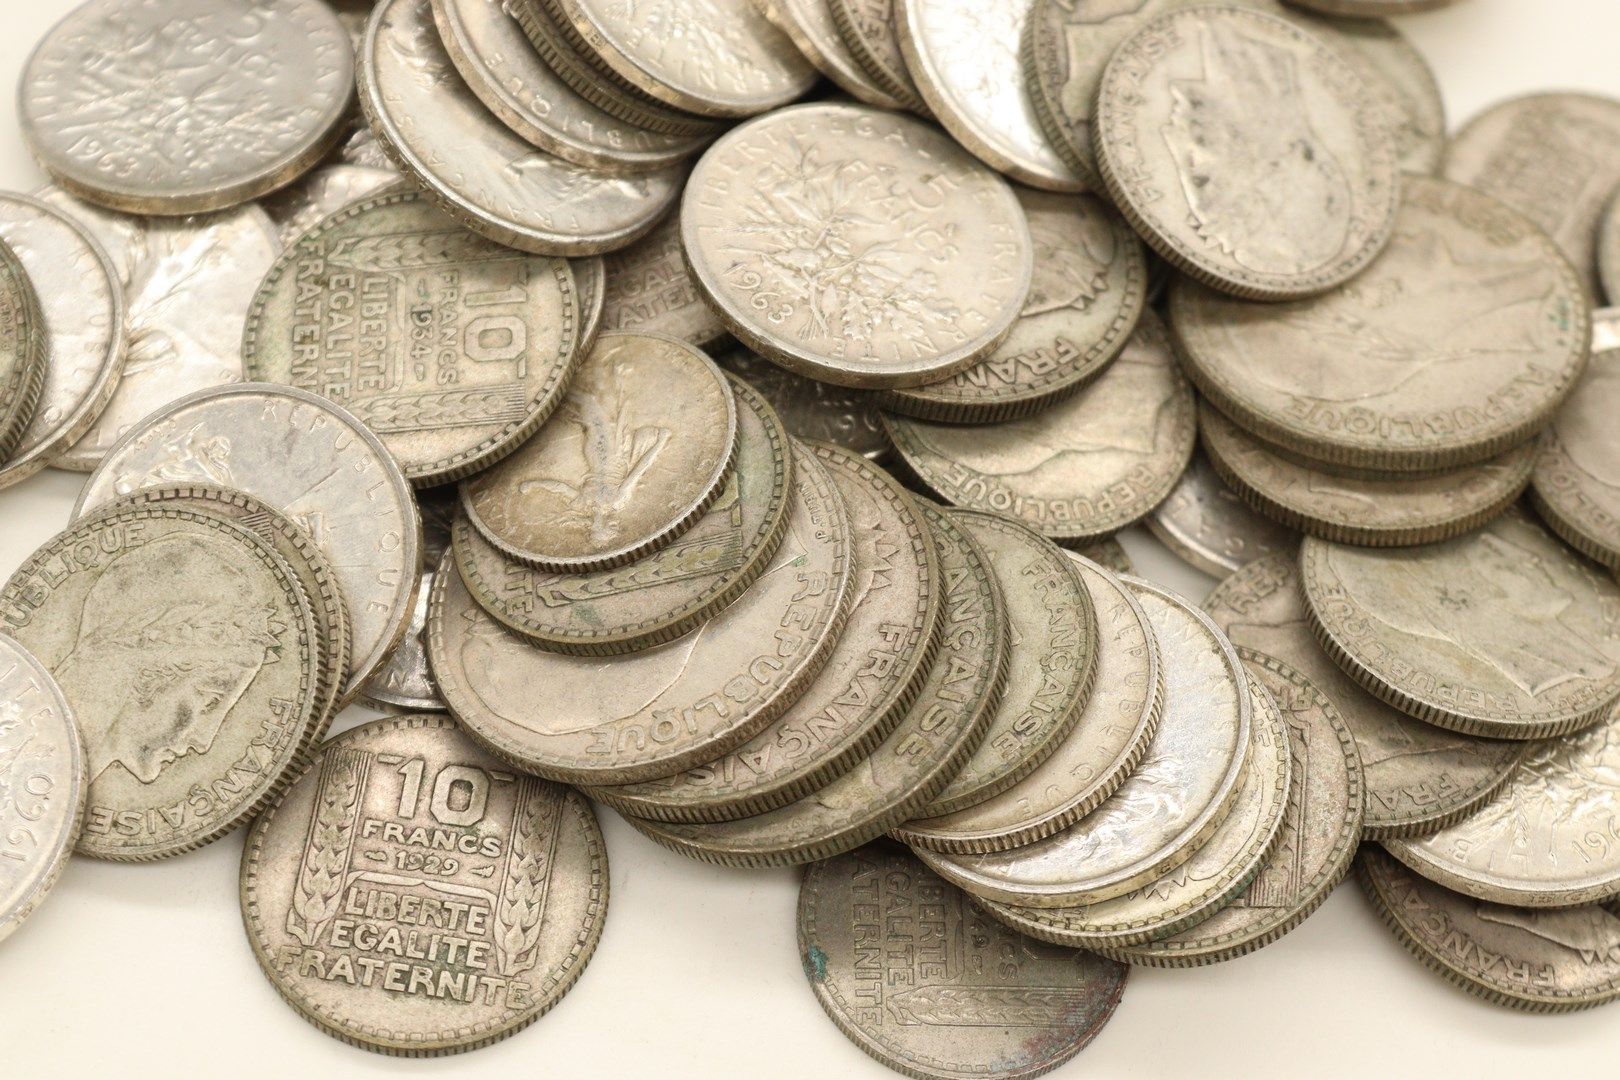 Null Lote de monedas de plata de 5 francos, 10 francos y 20 francos

Peso : 2.10&hellip;